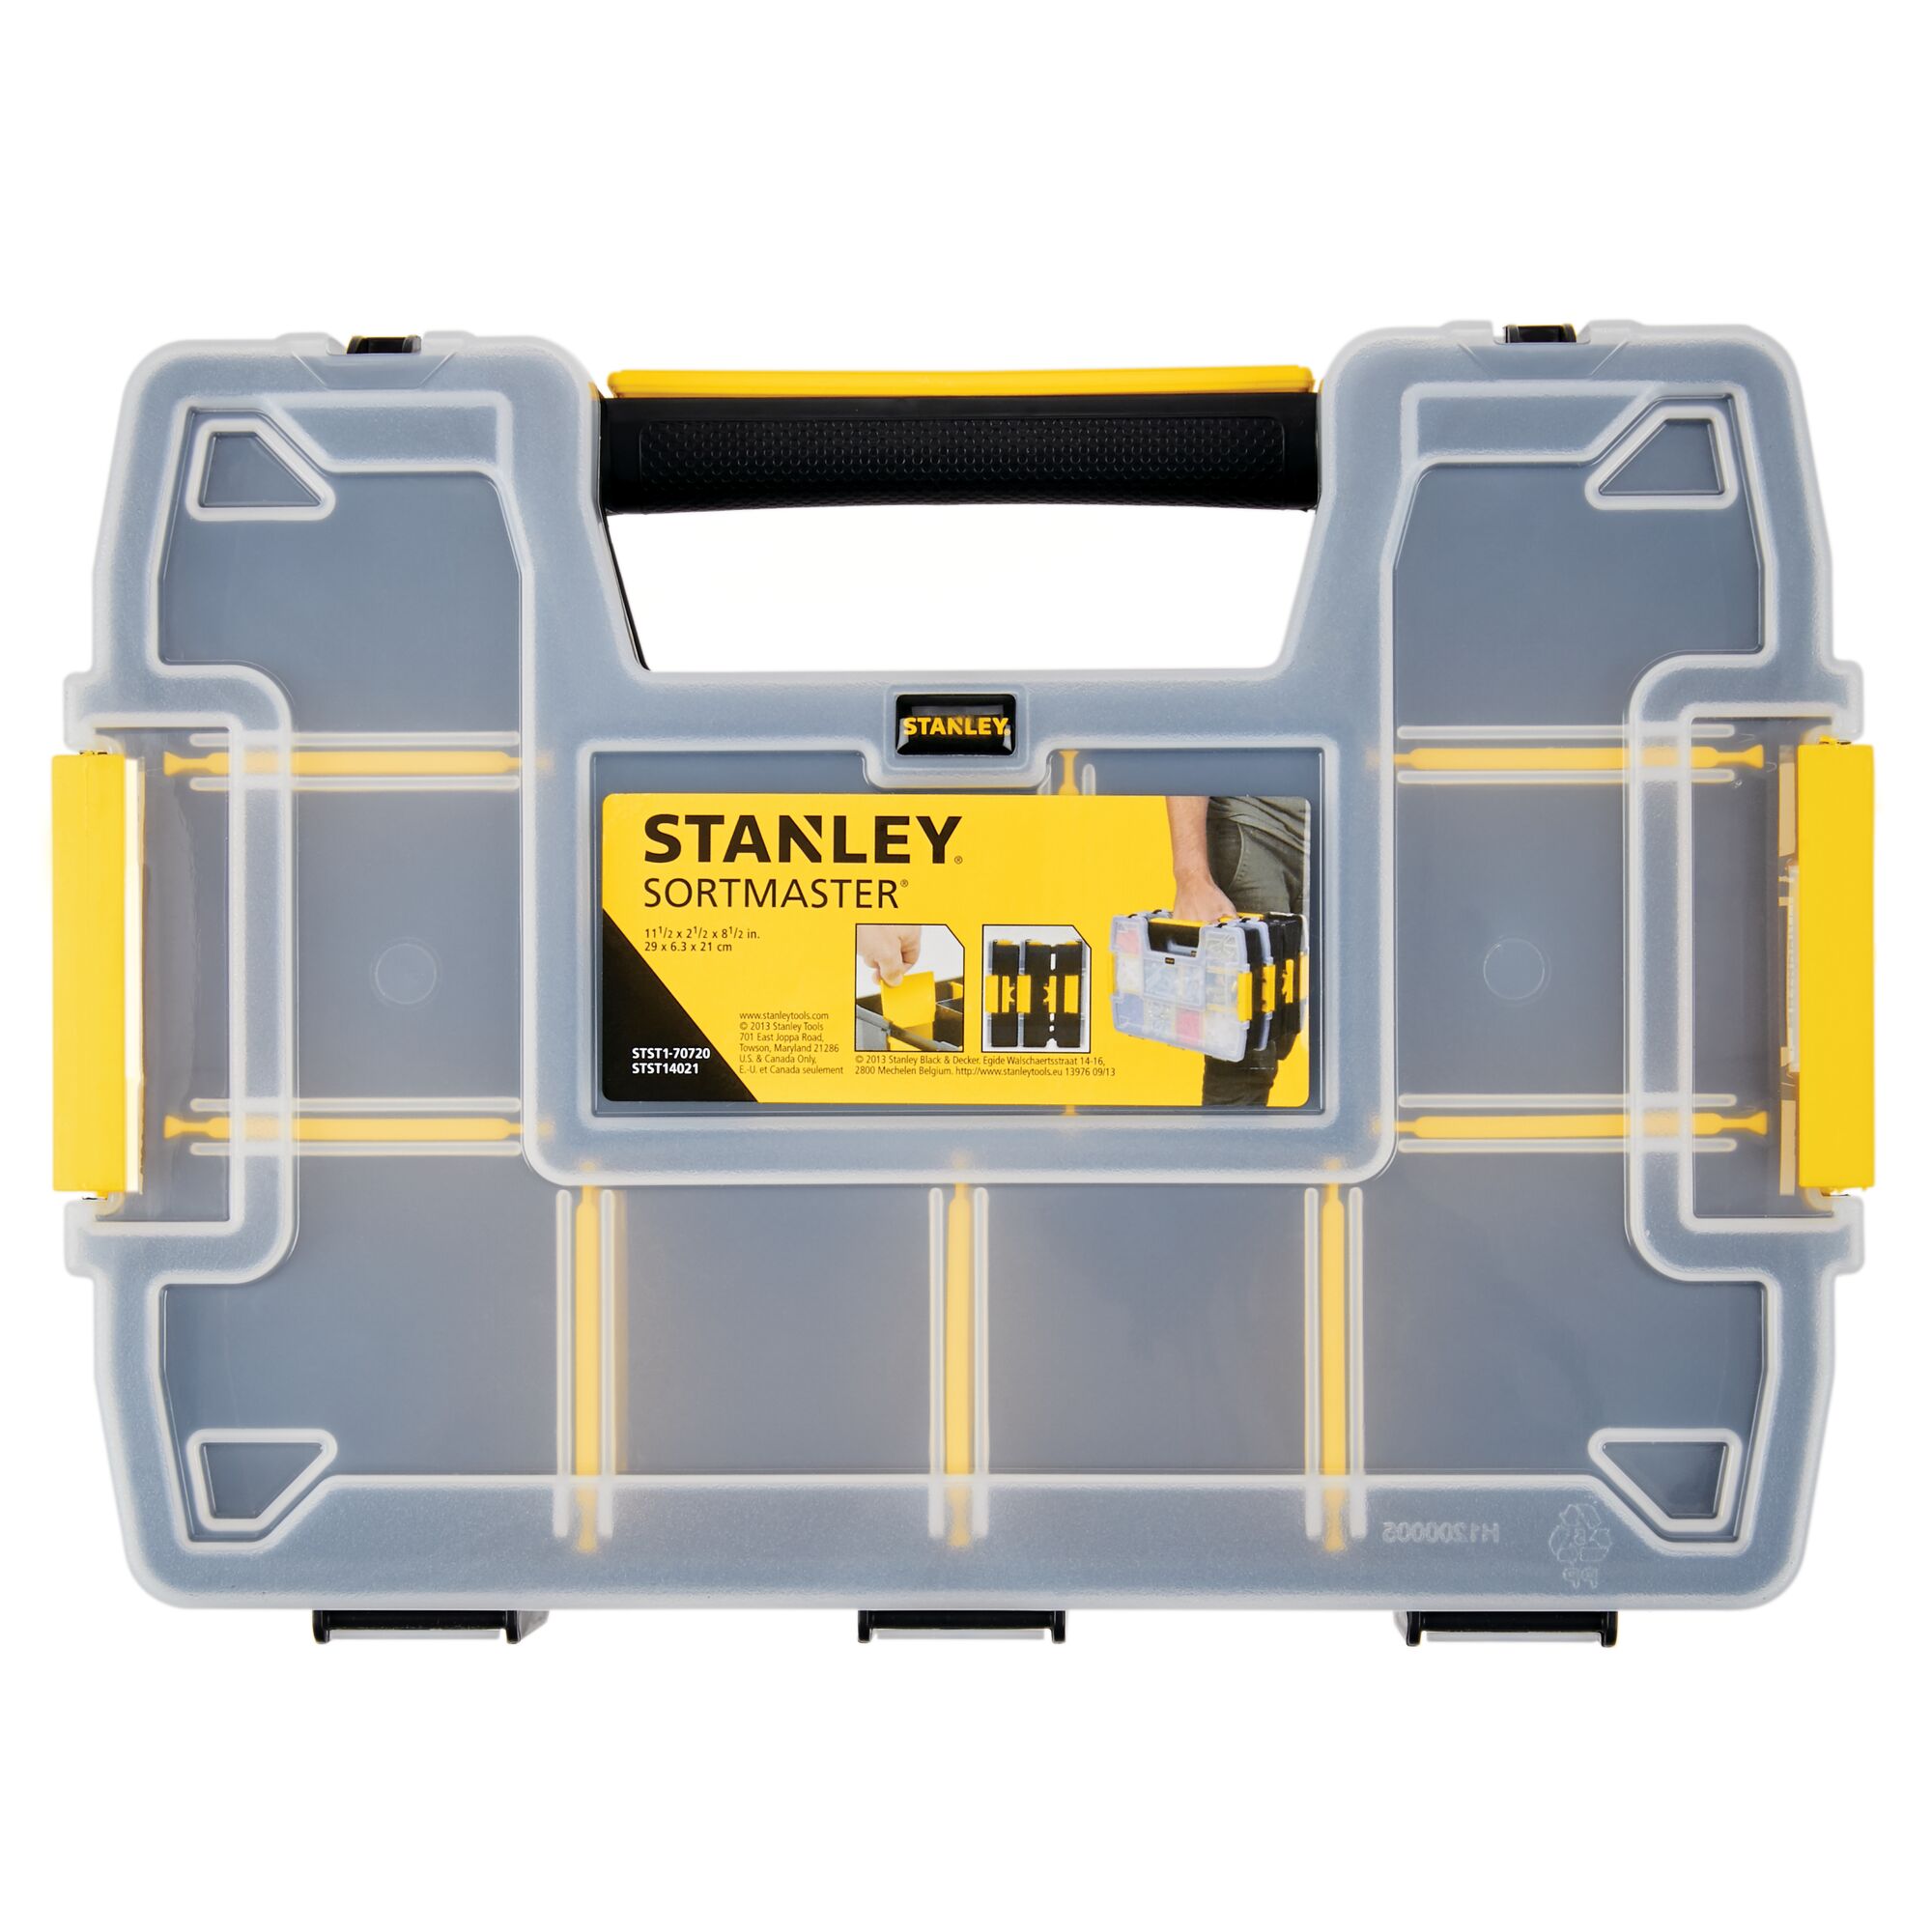 Stackable 1-97-483 Stanley Organiser Sortmaster Junior Toolbox Empty 